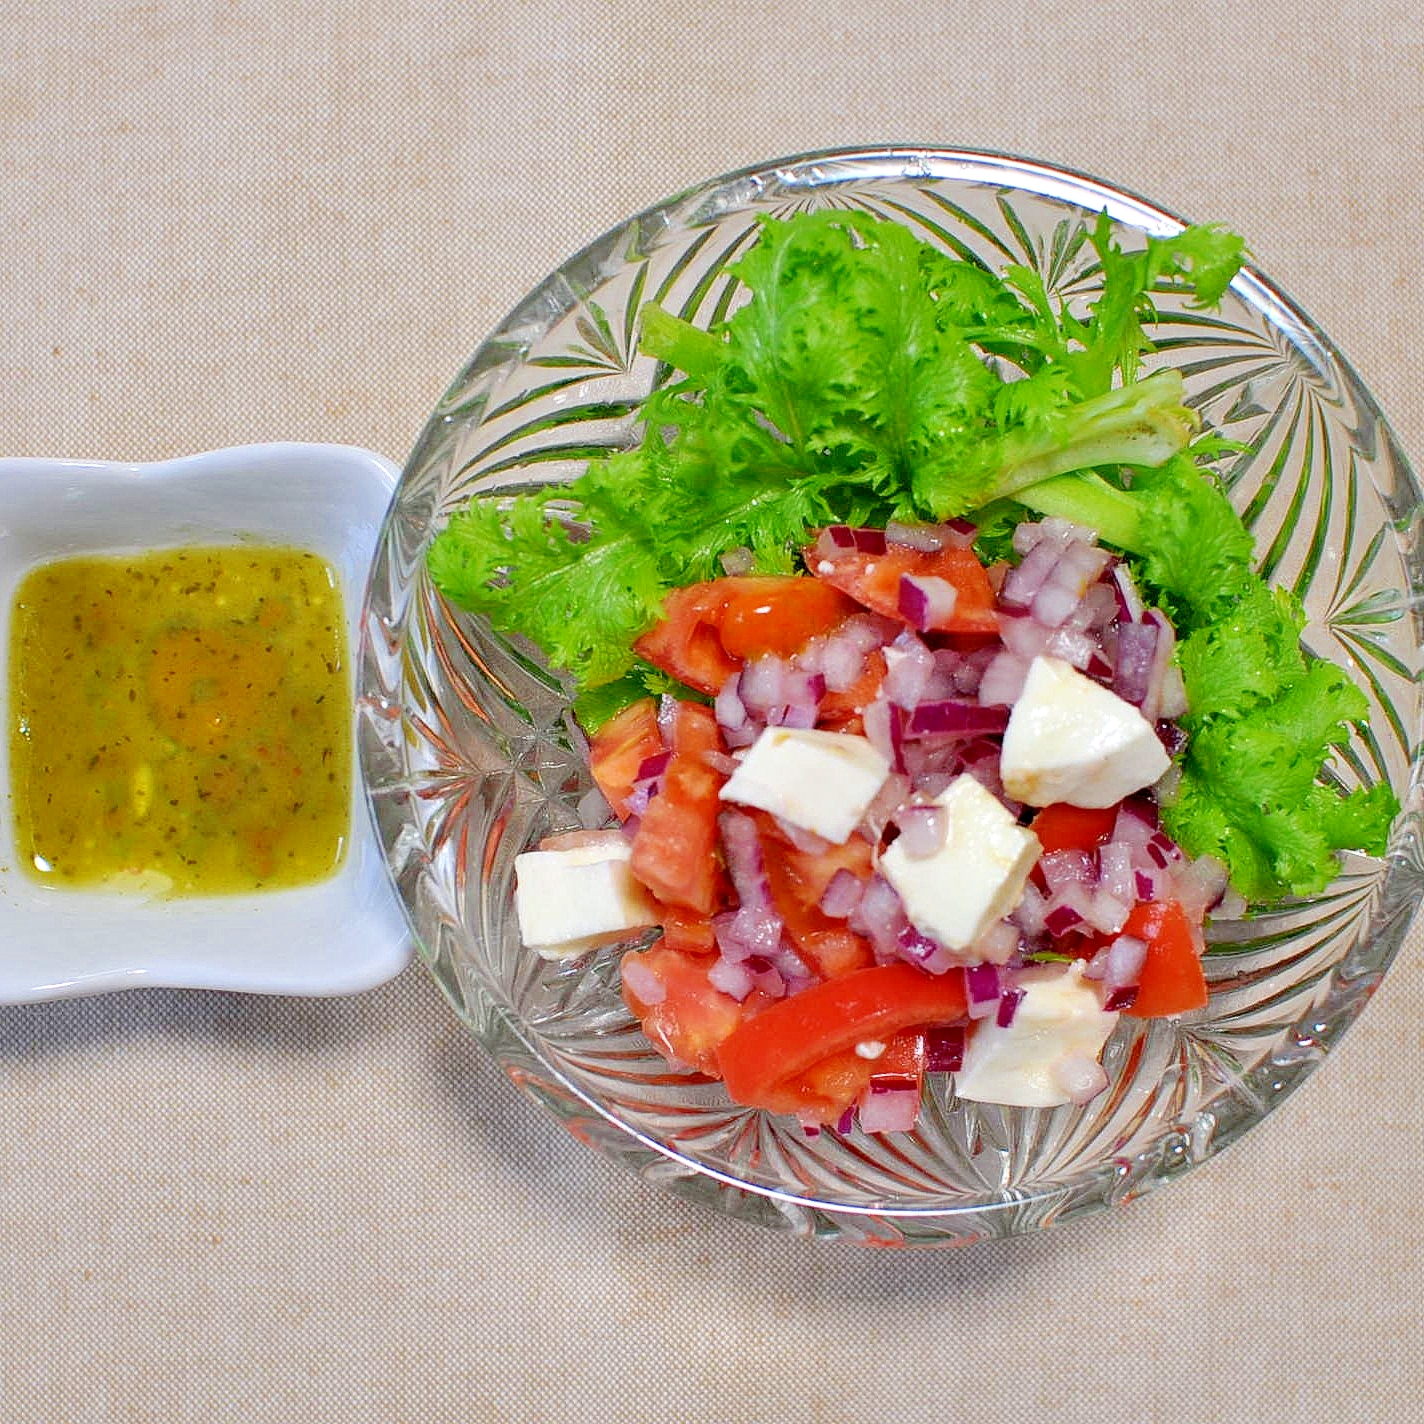 モッツァレラチーズとトマトと赤玉葱のサラダ